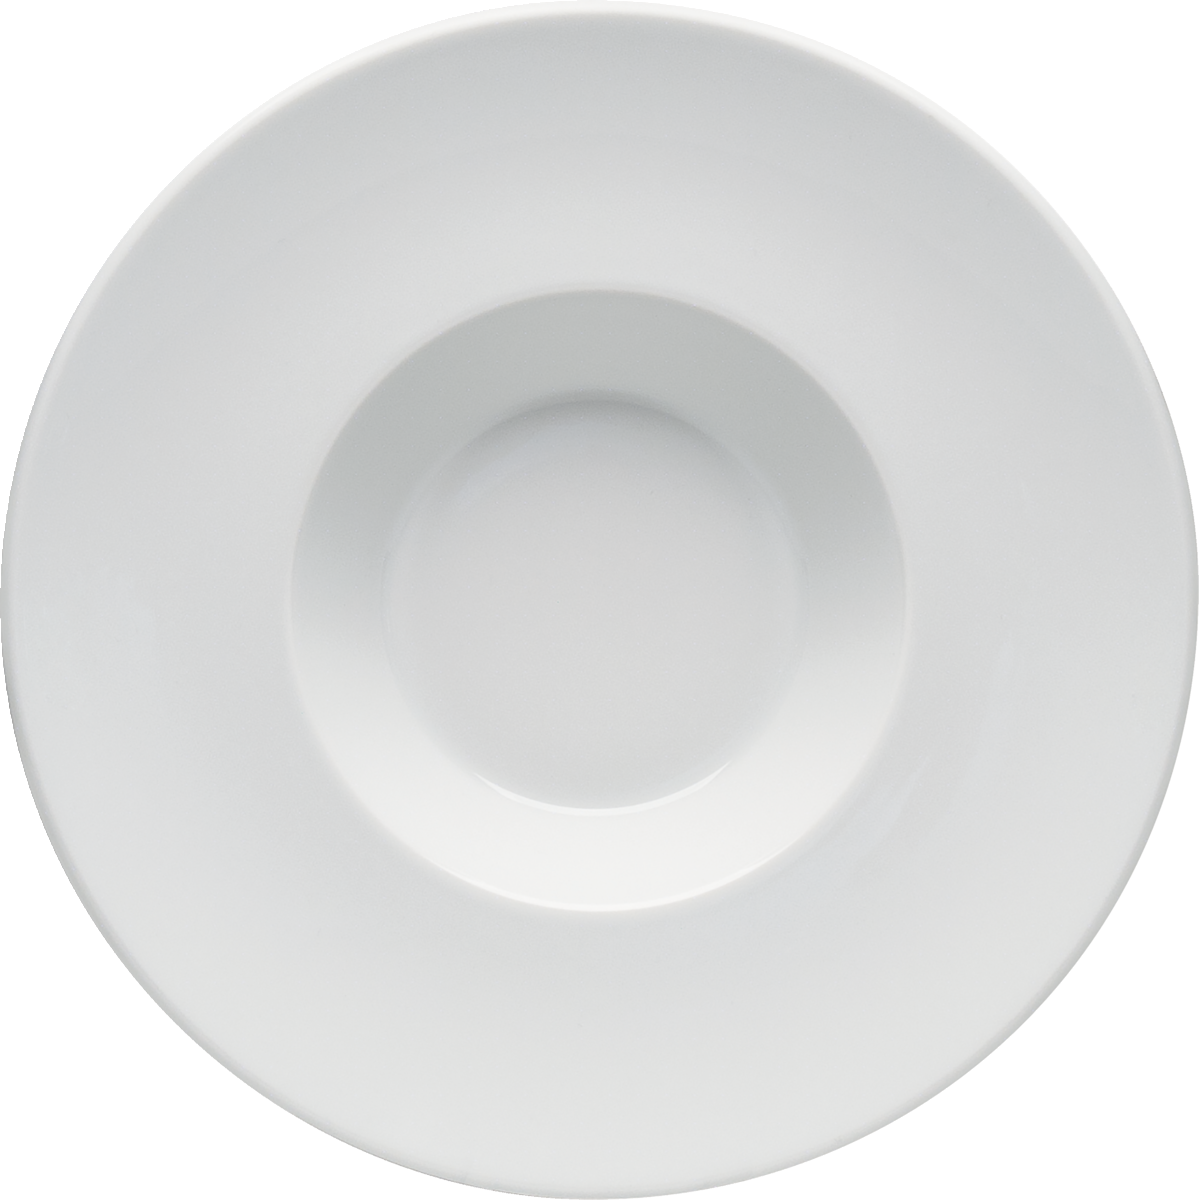 Plate deep round wide rim 28cm